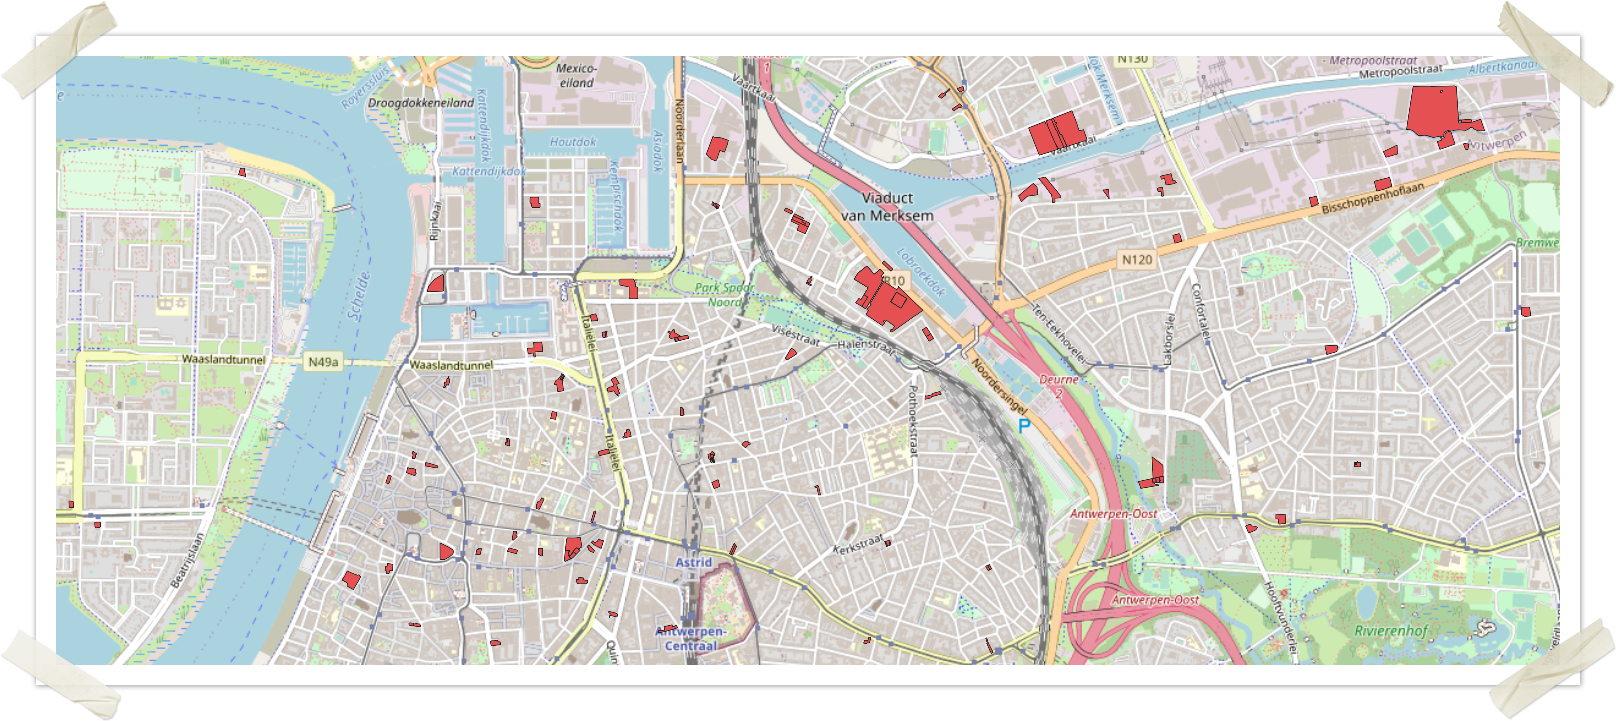 Inventaris leegstaande bedrijfsruimte - WFS in QGIS op OpenStreetMap